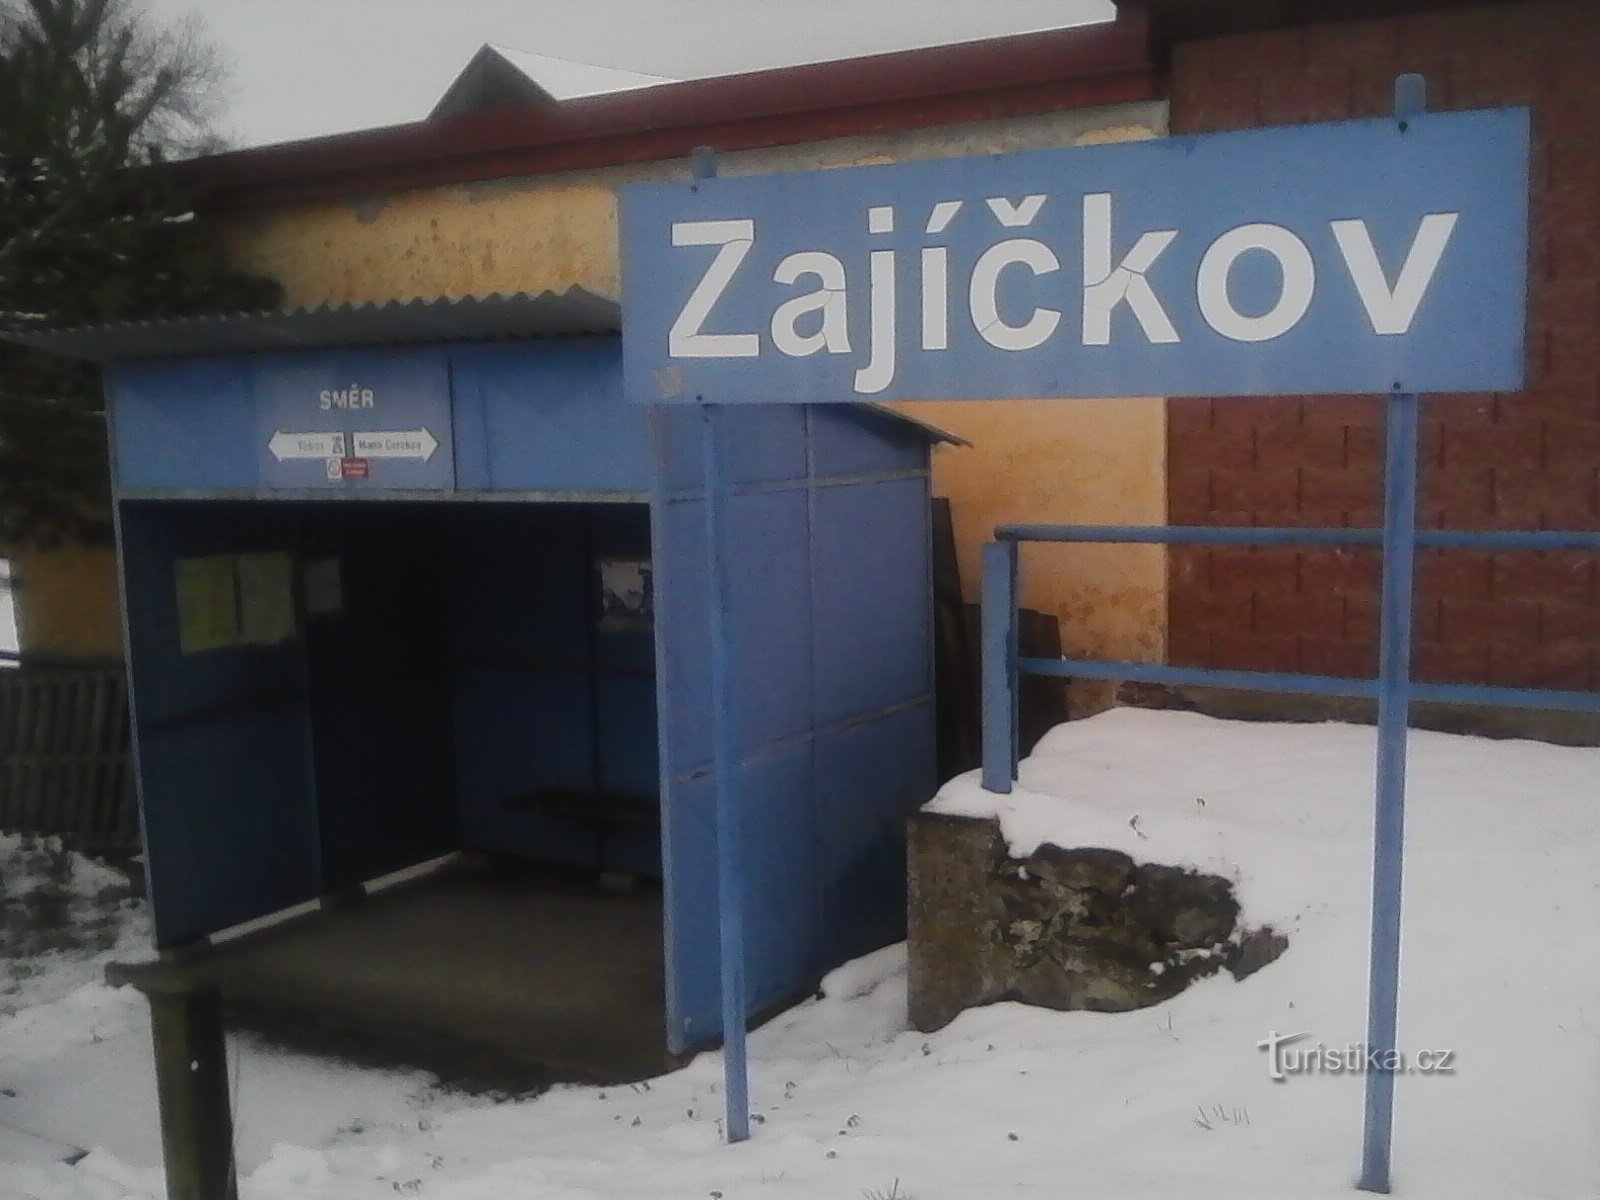 1. Zajíčkov - het startpunt van de wandeling van vandaag.